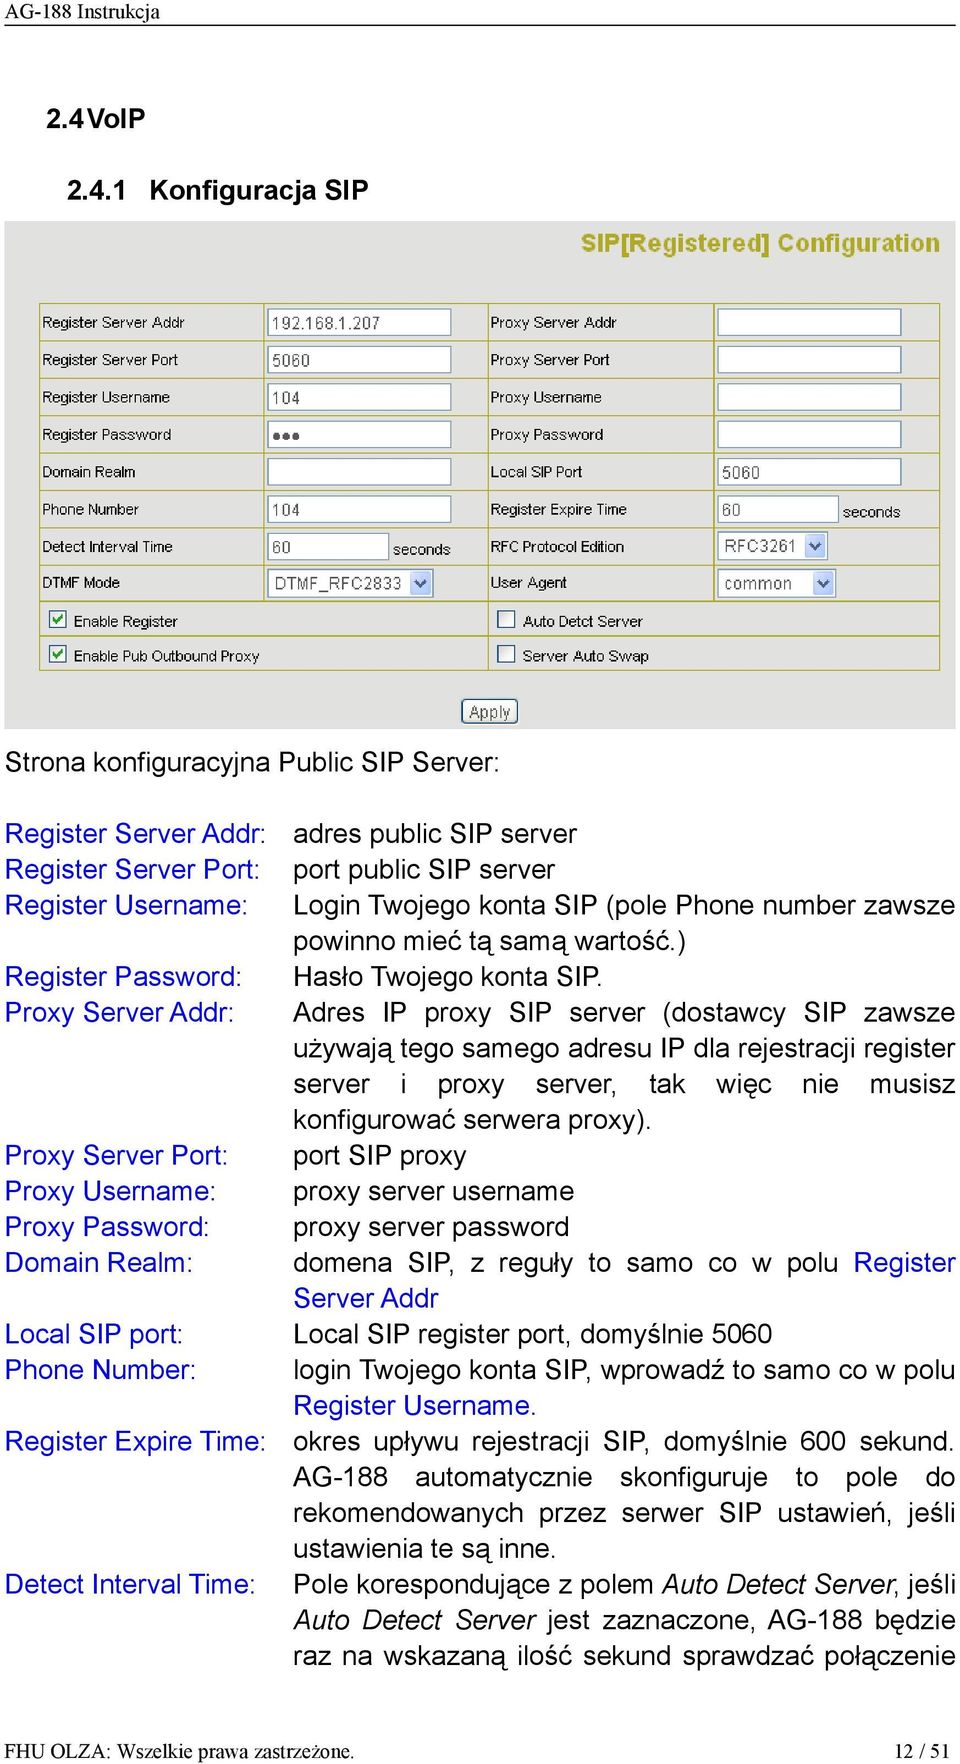 Proxy Server Addr: Adres IP proxy SIP server (dostawcy SIP zawsze używają tego samego adresu IP dla rejestracji register server i proxy server, tak więc nie musisz konfigurować serwera proxy).